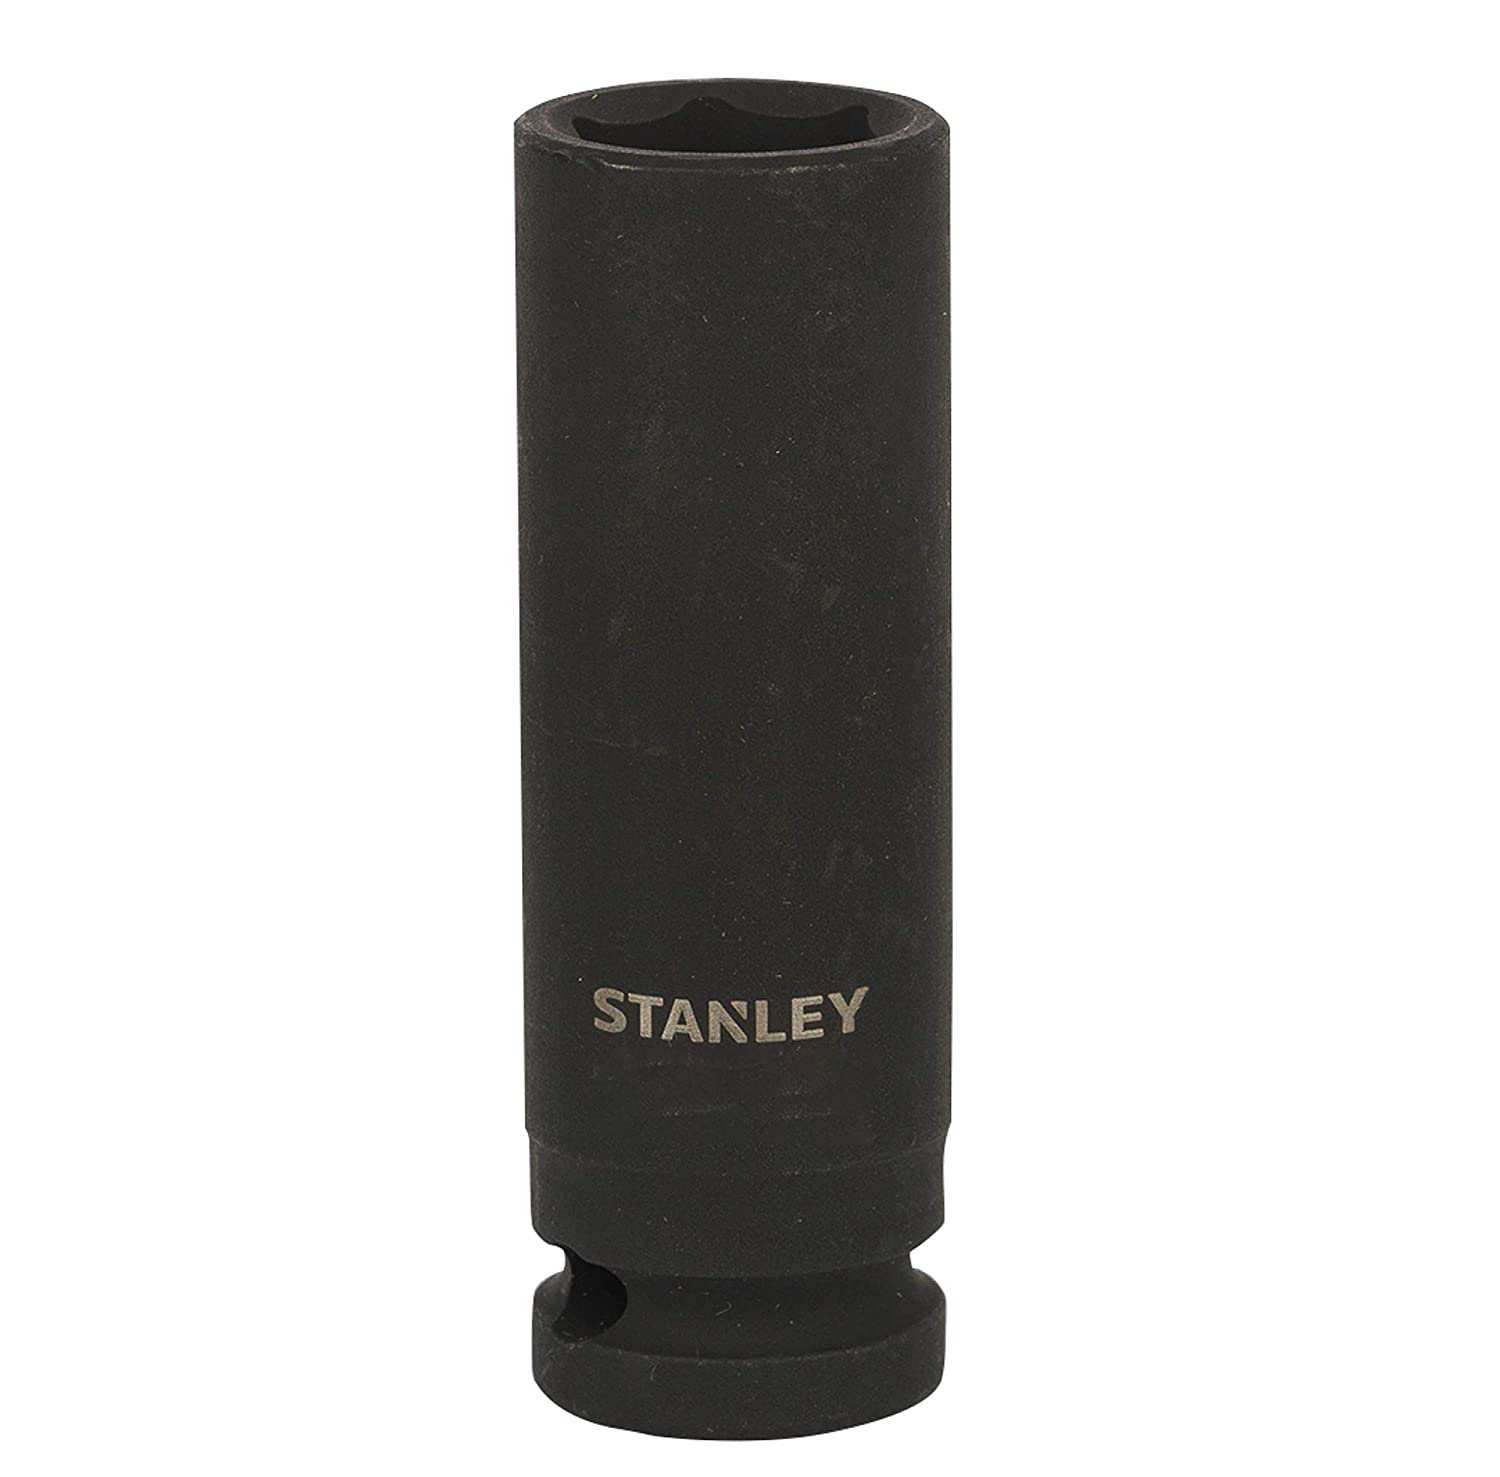 Hình ảnh 1 của mặt hàng Đầu tuýp 1/2" impact deep socket 16mm Stanley STMT91380-8B